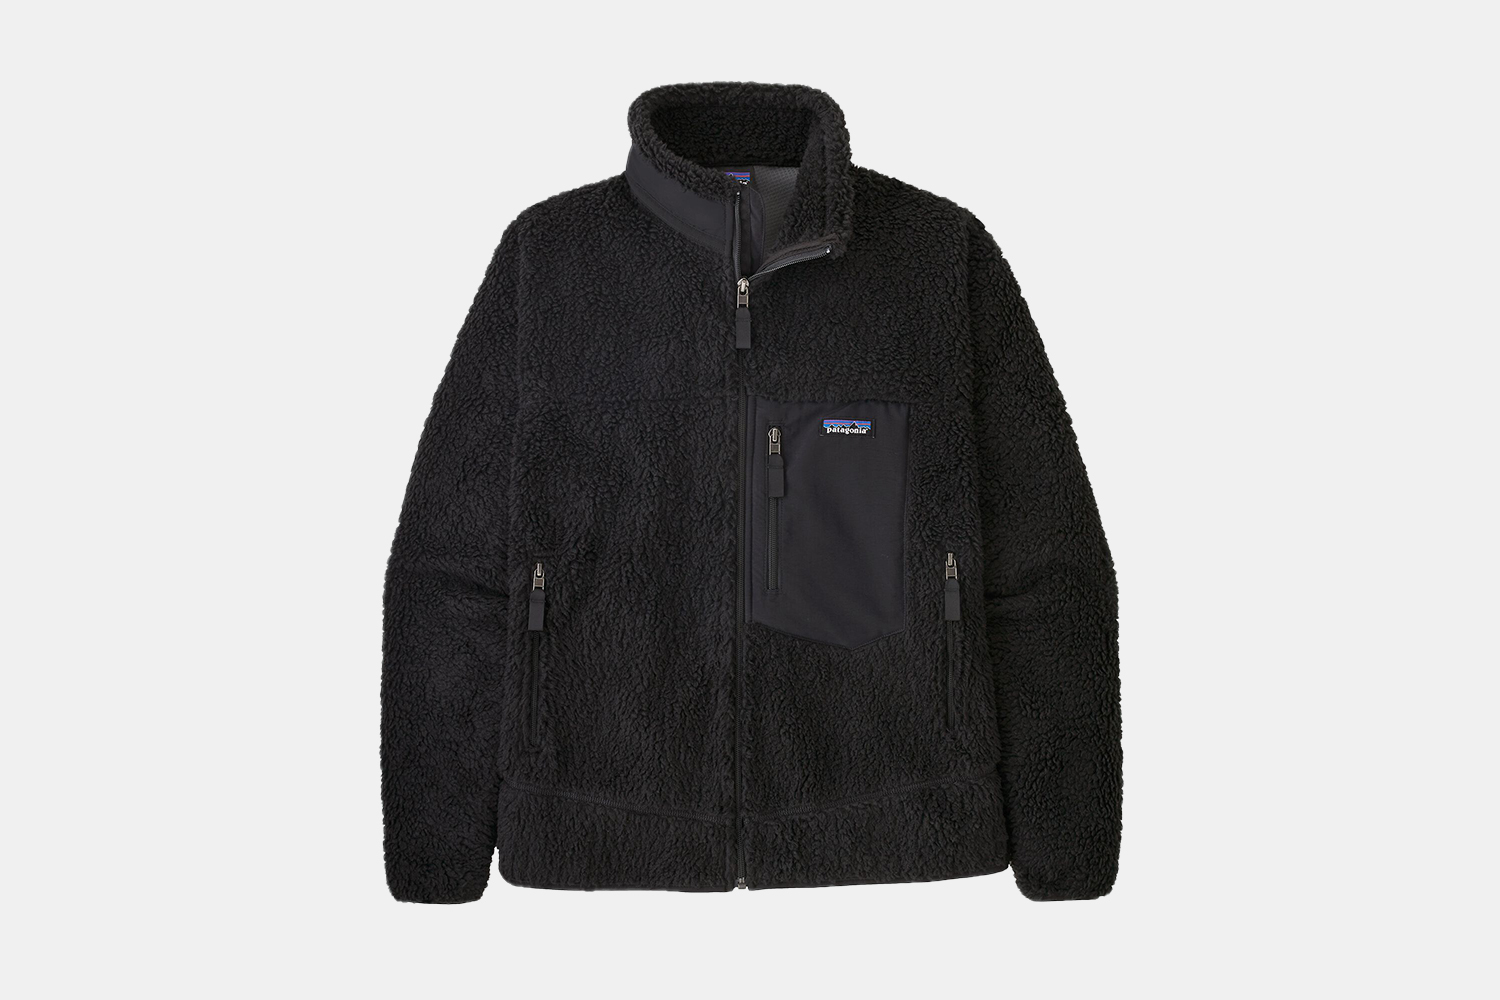 a black fleece jacket